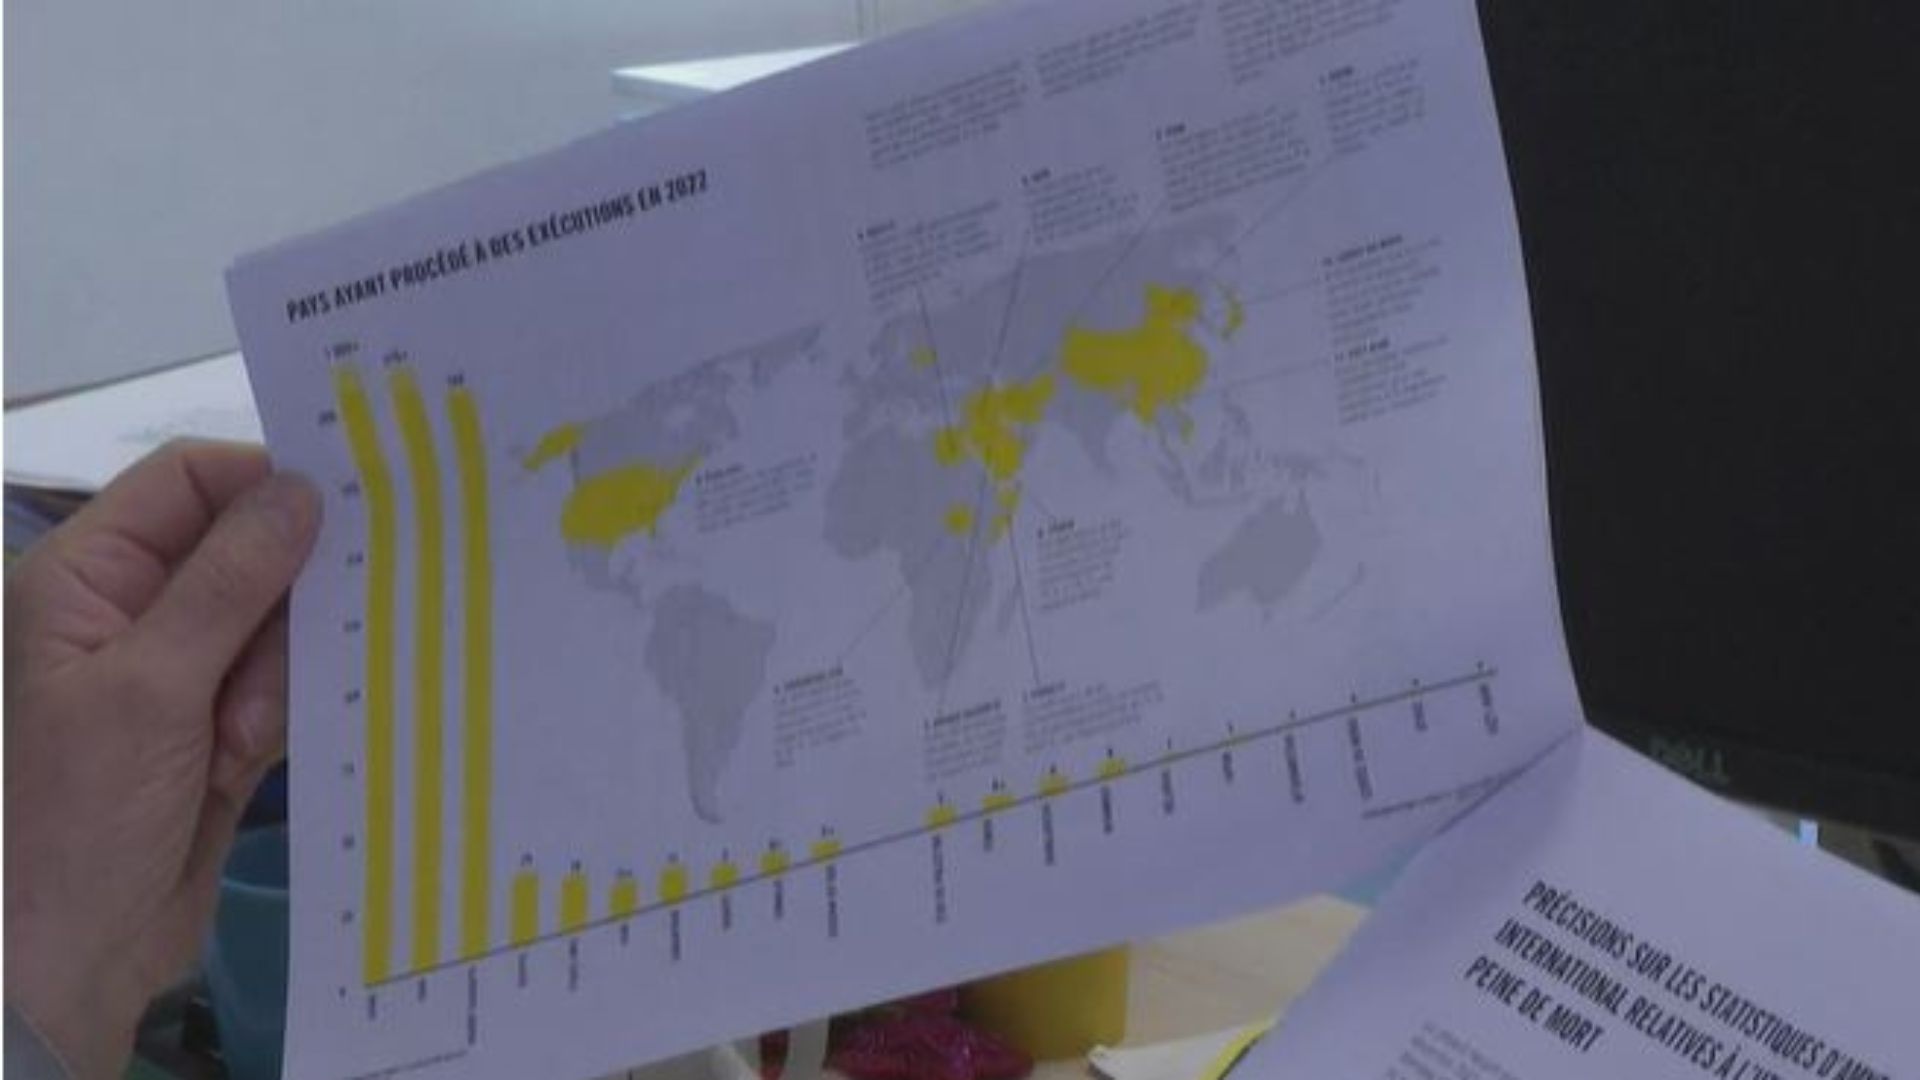 Cuáles son los países con más ejecuciones por pena de muerte según informe de Amnistía Internacional